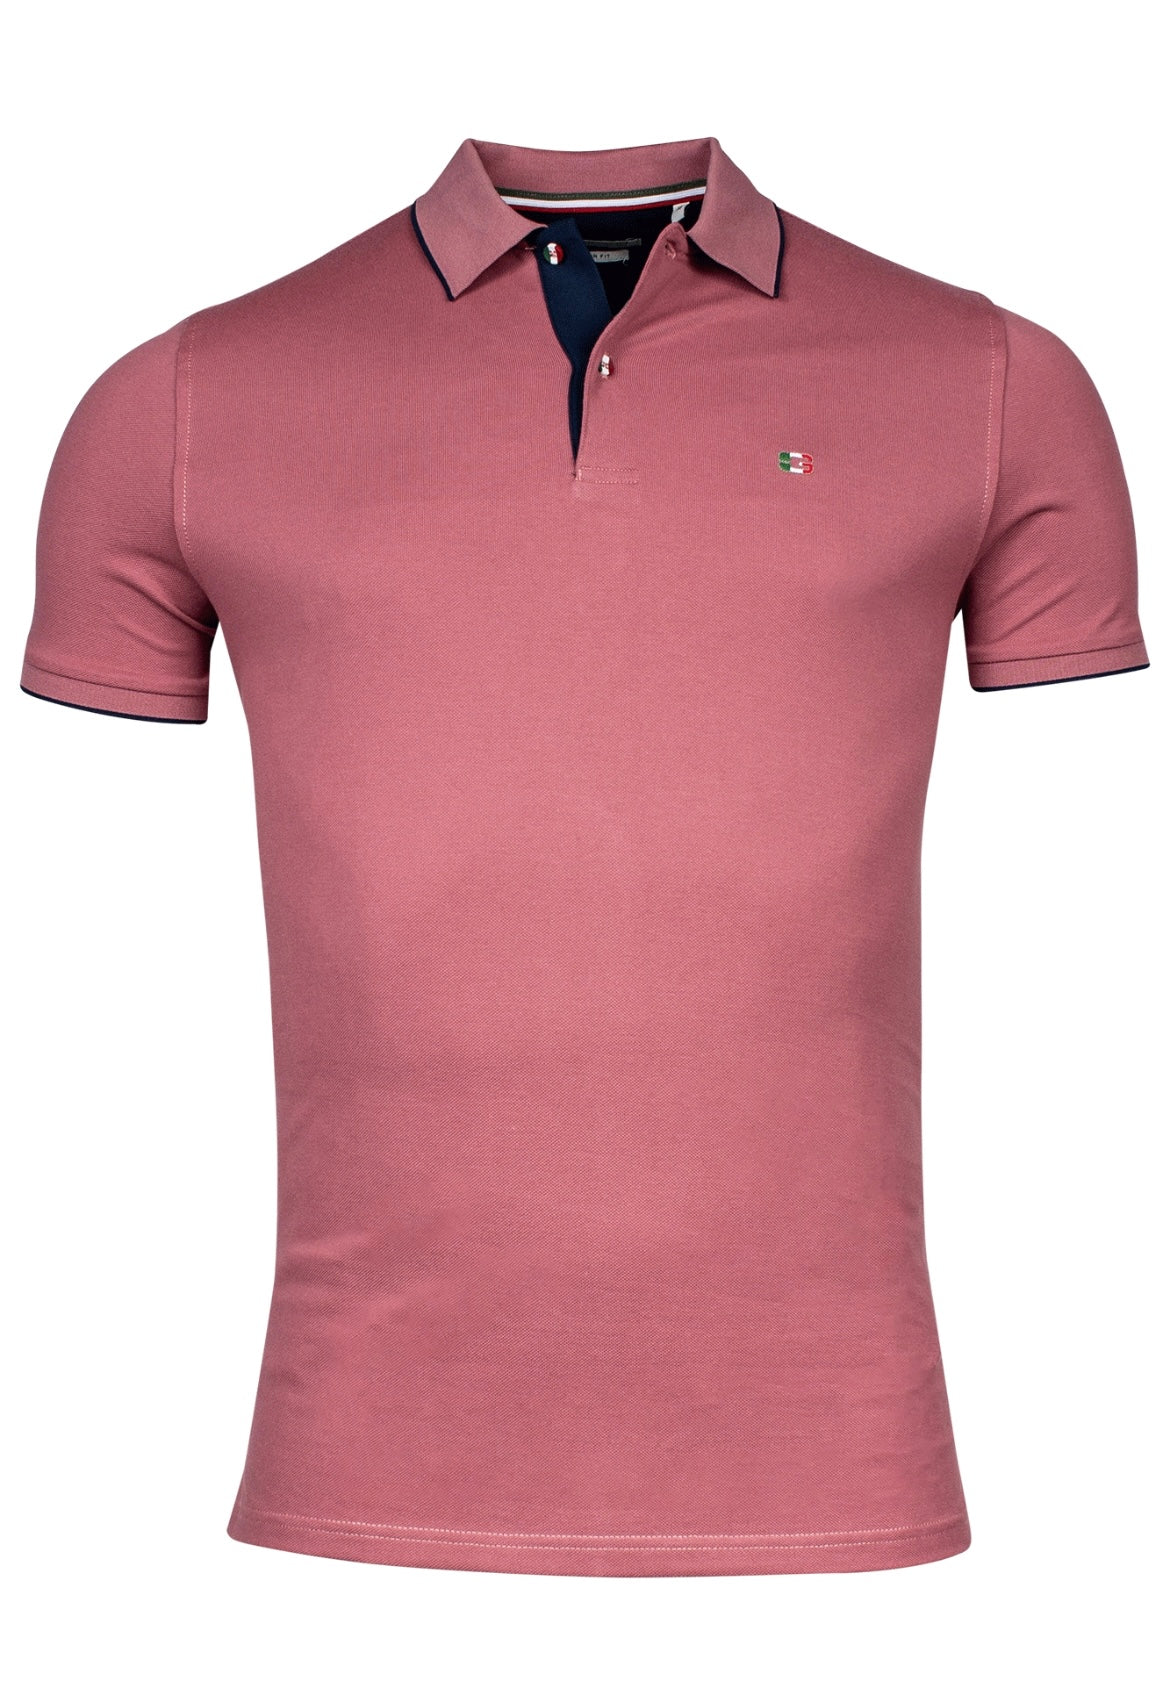 Giordano Dusky Pink Polo Short Sleeve